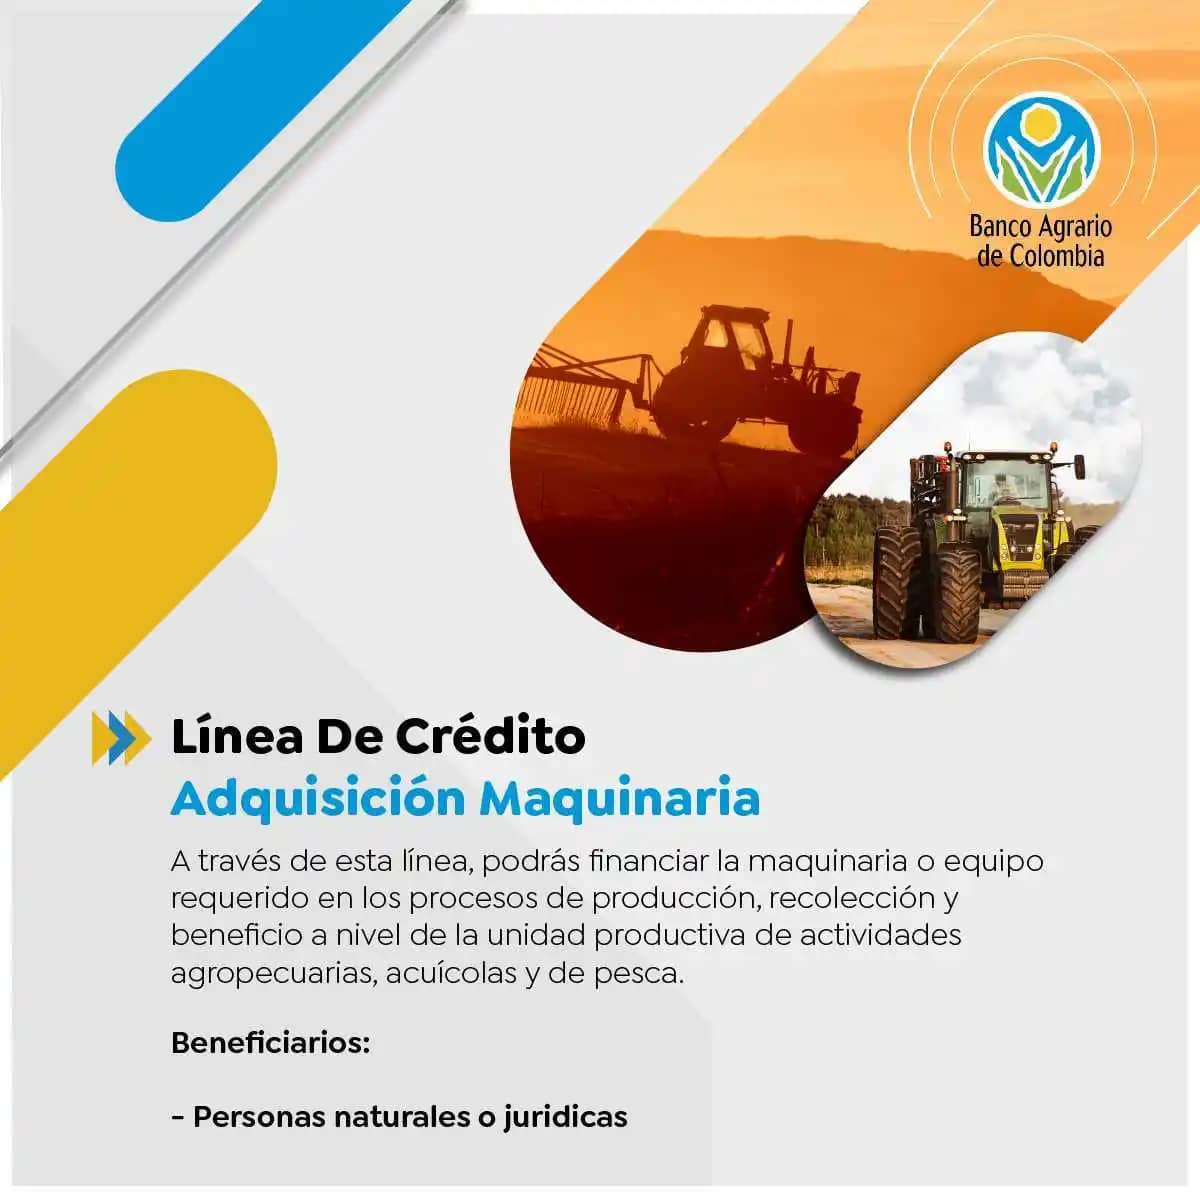 Línea de Crédito Adquisición Maquinaria - Banco Agrario